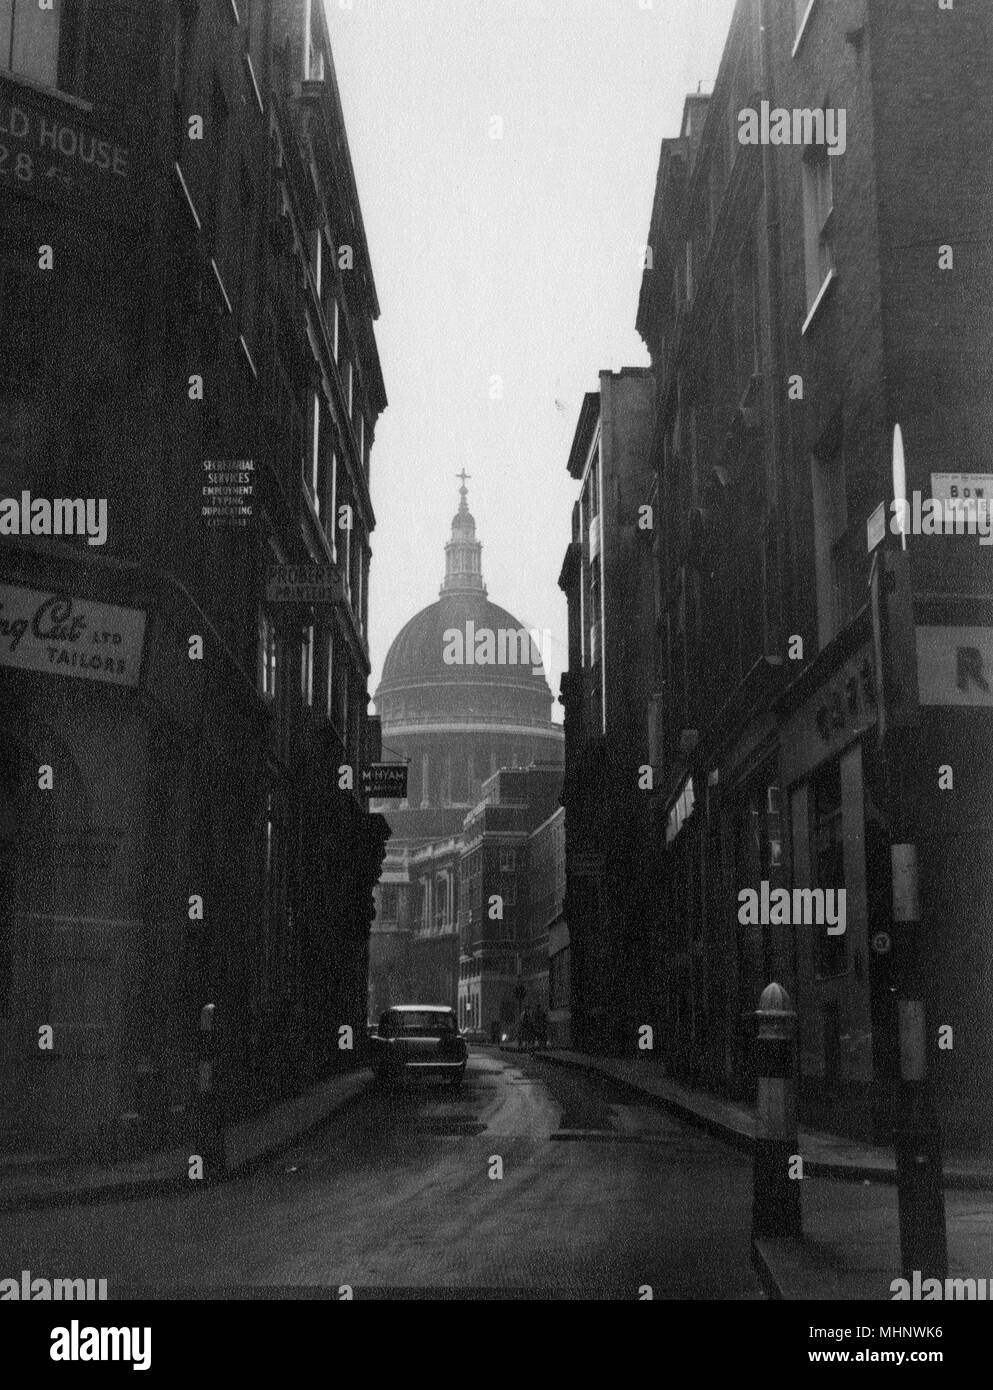 Londra - La cupola della cattedrale di San Paolo da Watling Street (all'incrocio con Bow Lane) Data: 1963 Foto Stock